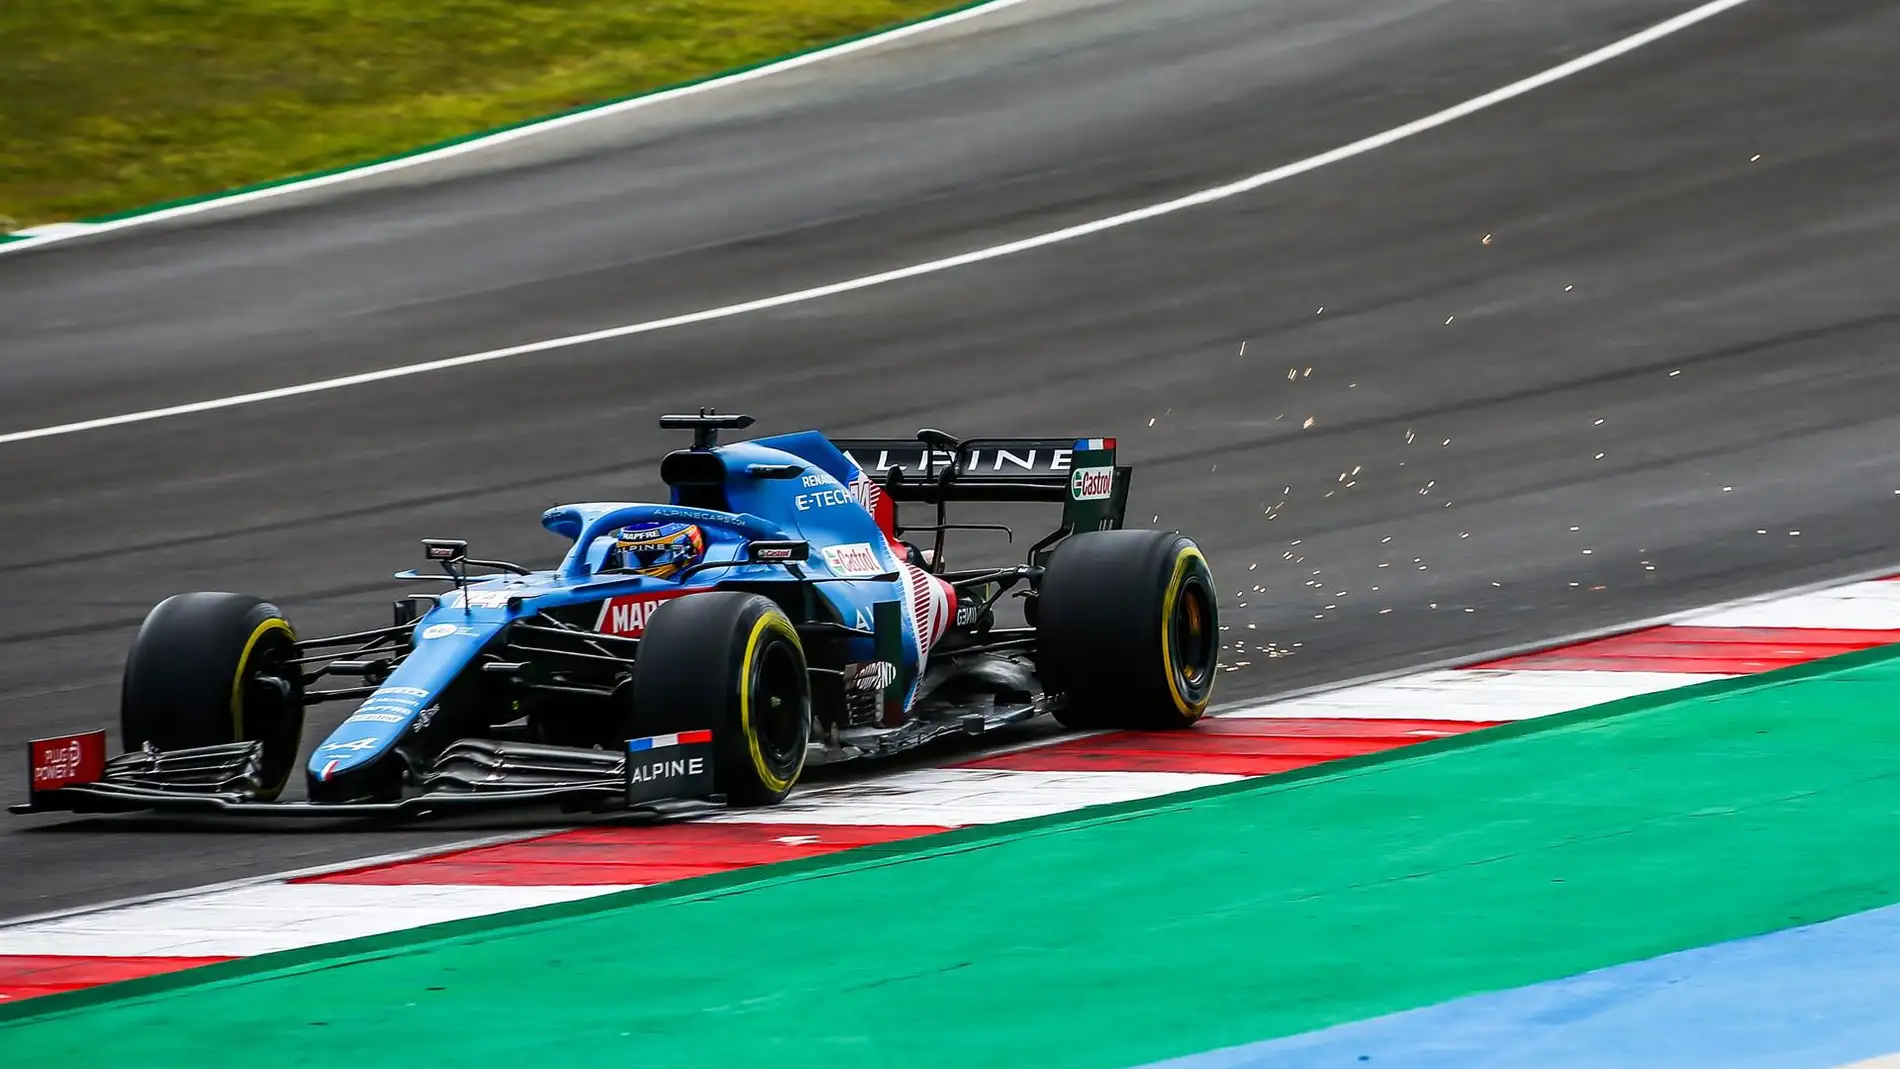  Bottas sorprende en Portimao; Sainz saldrá quinto y Alonso décimotercero